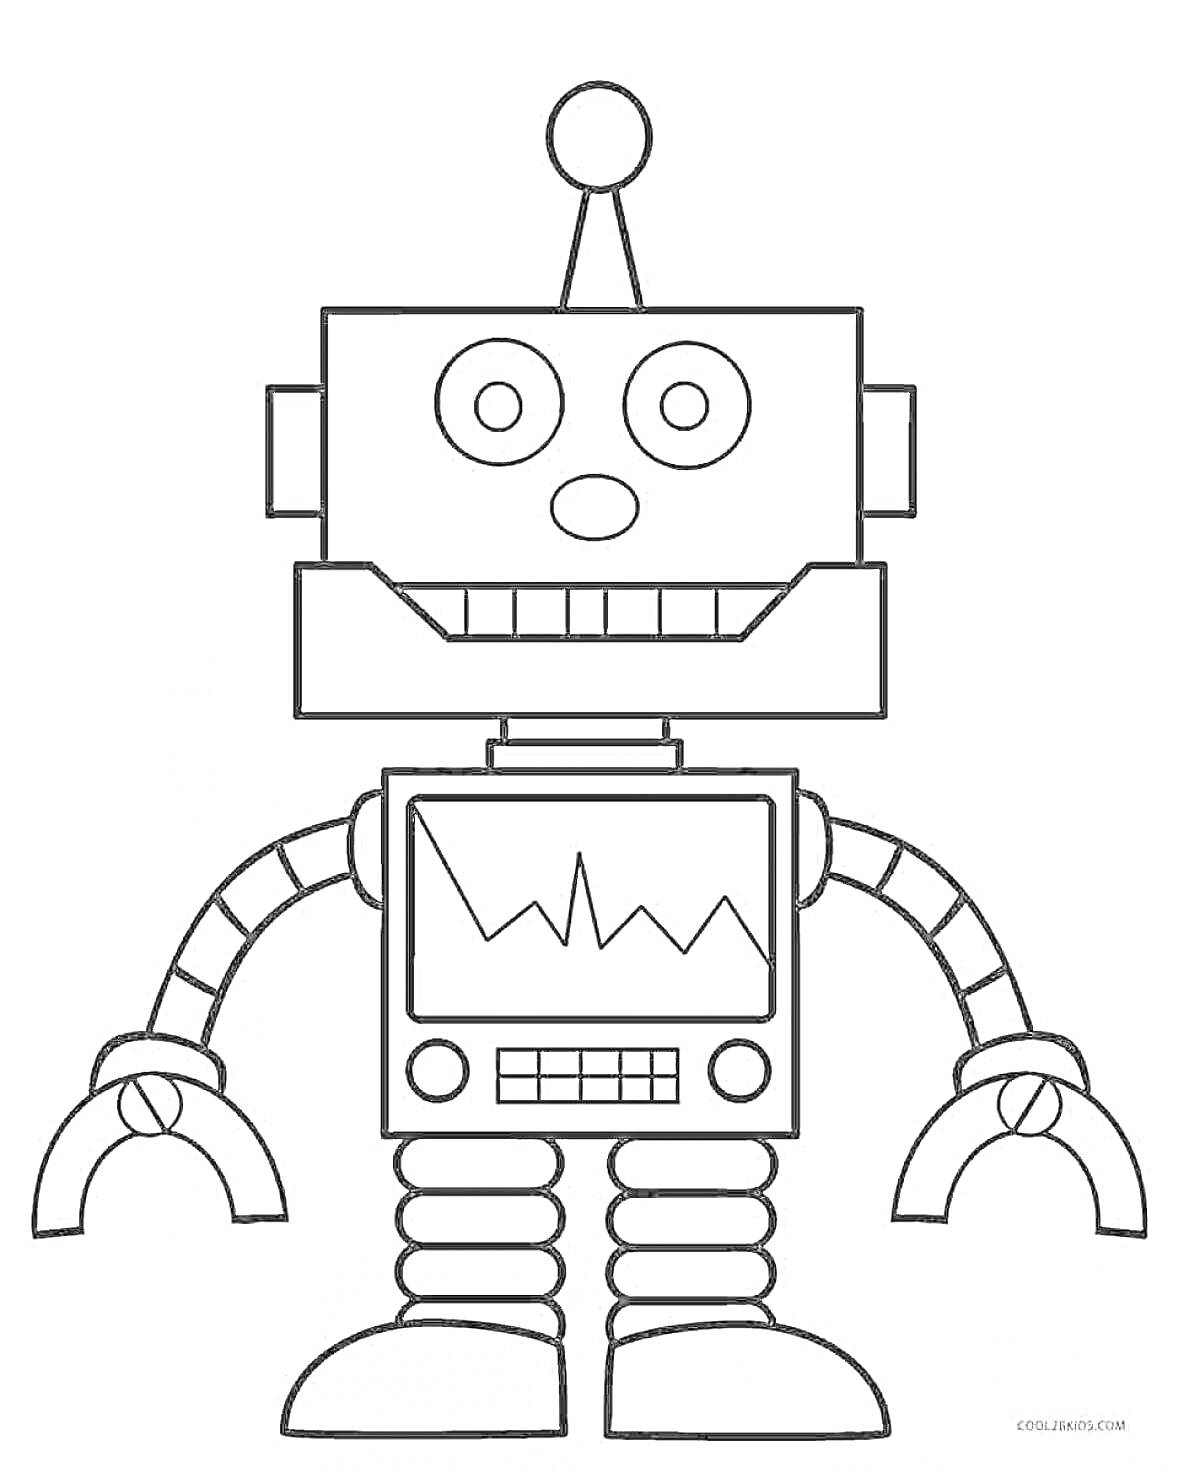 Раскраска Робот с антенной, дисплеем, руками-когтями и лапами